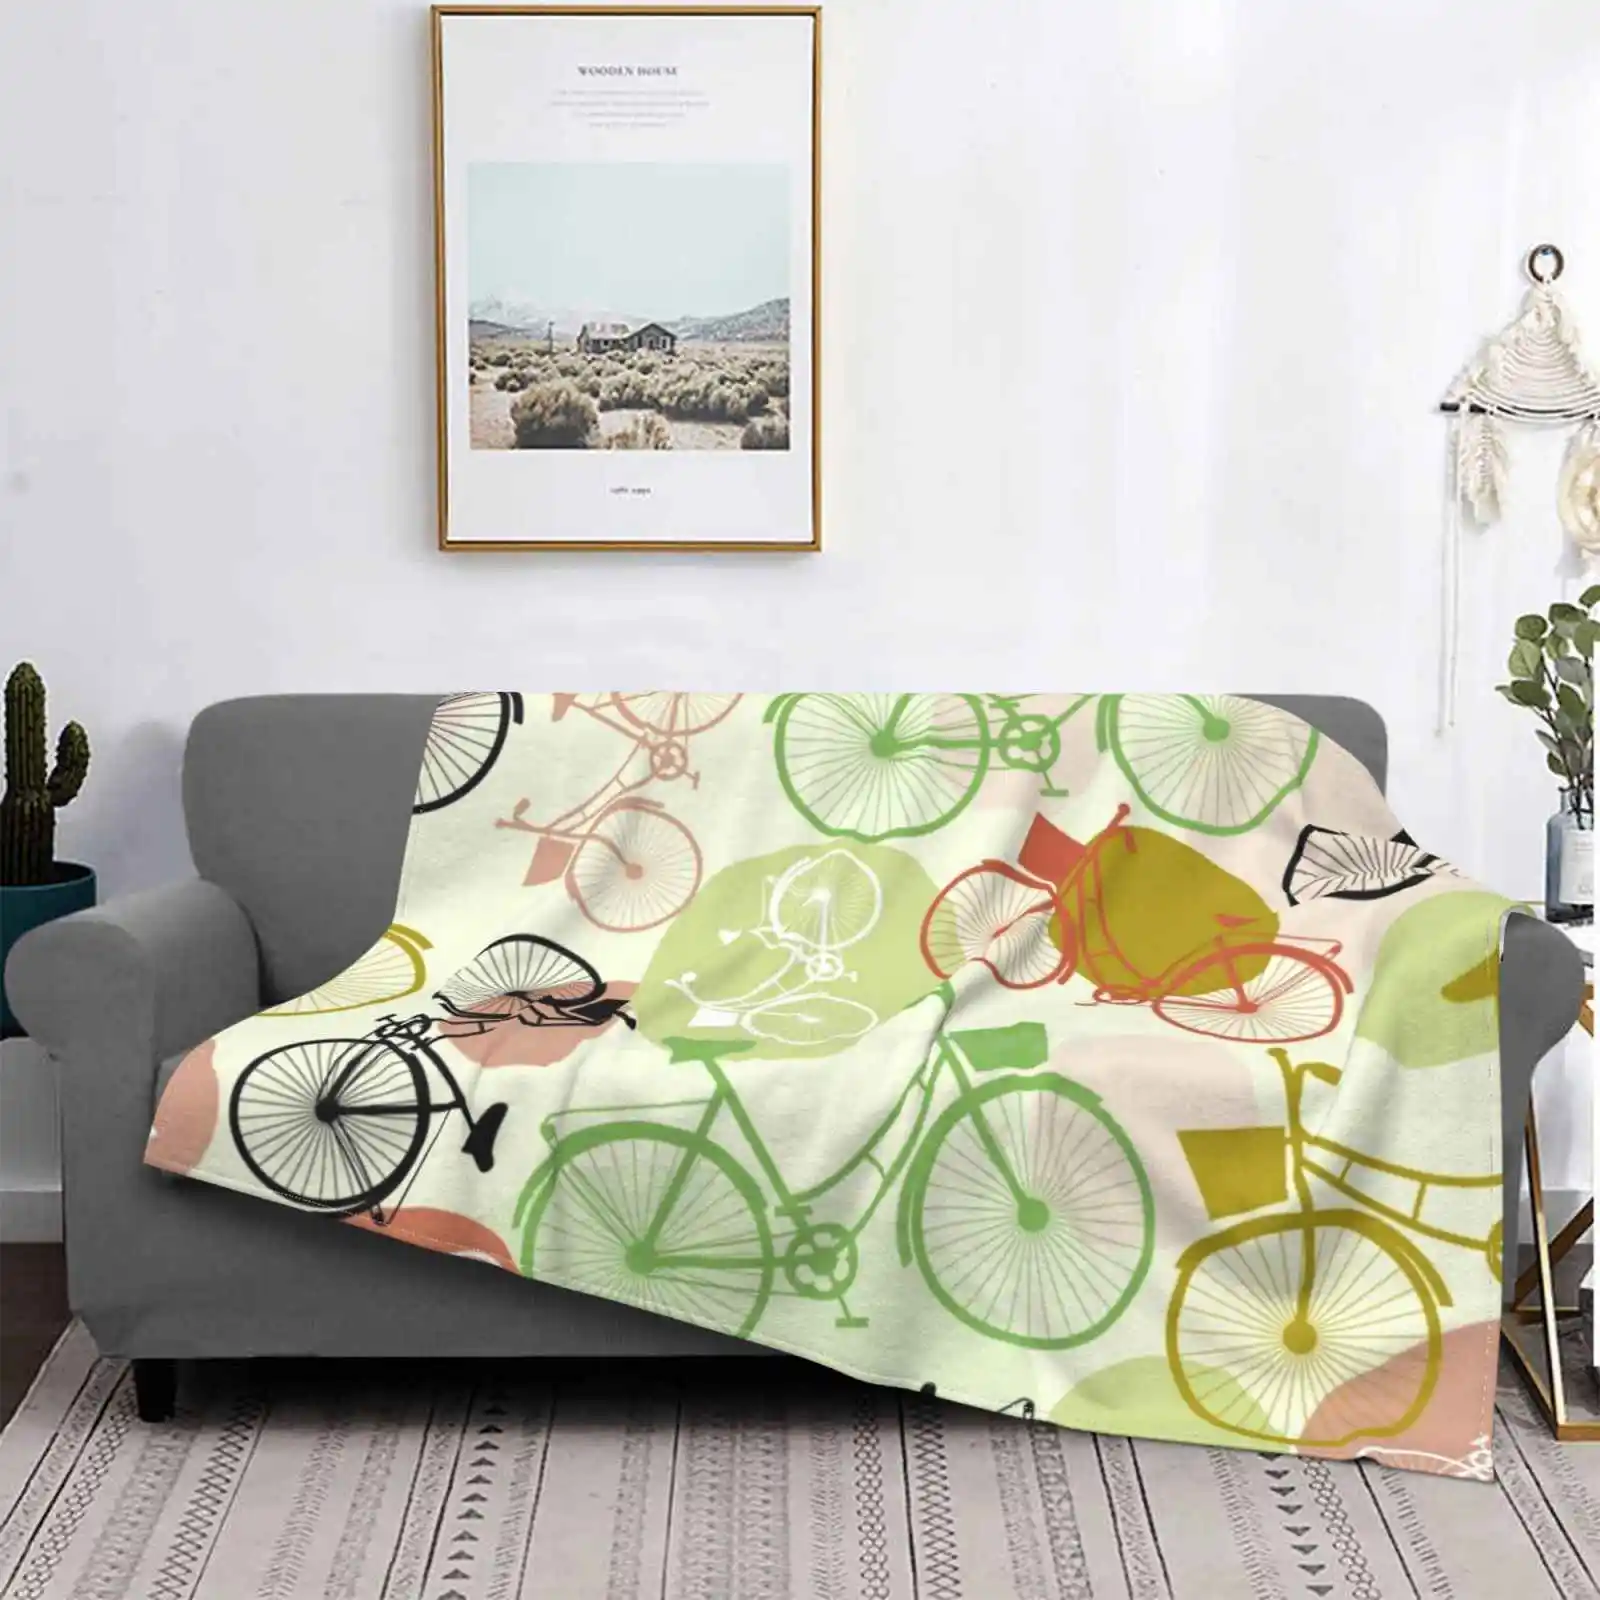 

Винтажное фланелевое одеяло для езды на велосипеде, с бесшовным рисунком, зеленые, коричневые, бежевые цвета, яркое теплое фланелевое одеяло